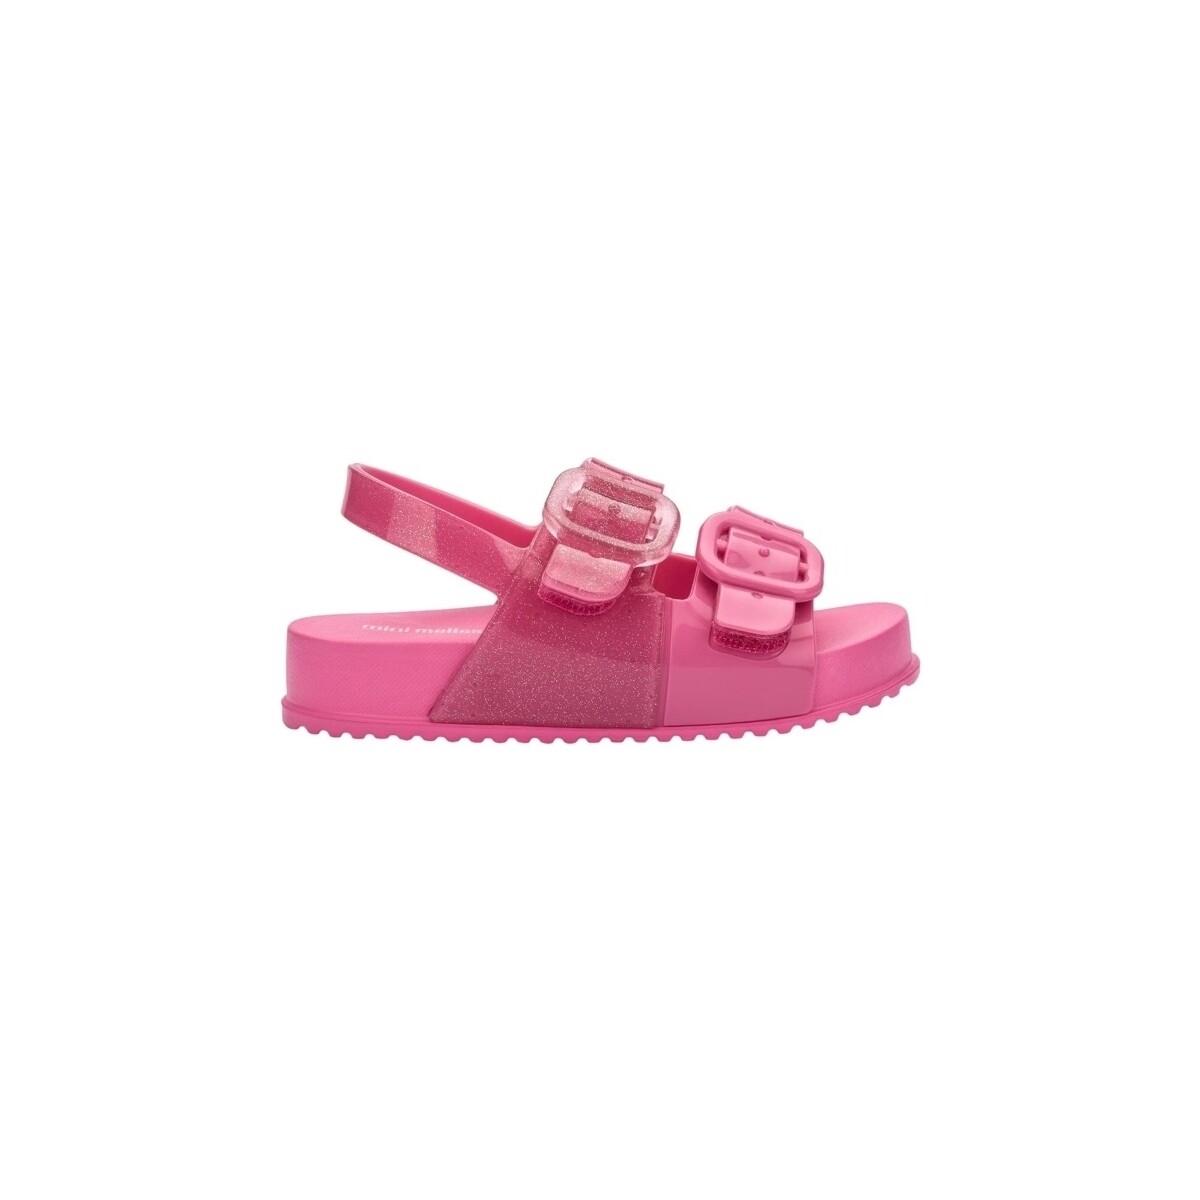 Boty Děti Sandály Melissa MINI  Baby Cozy Sandal - Glitter Pink Růžová